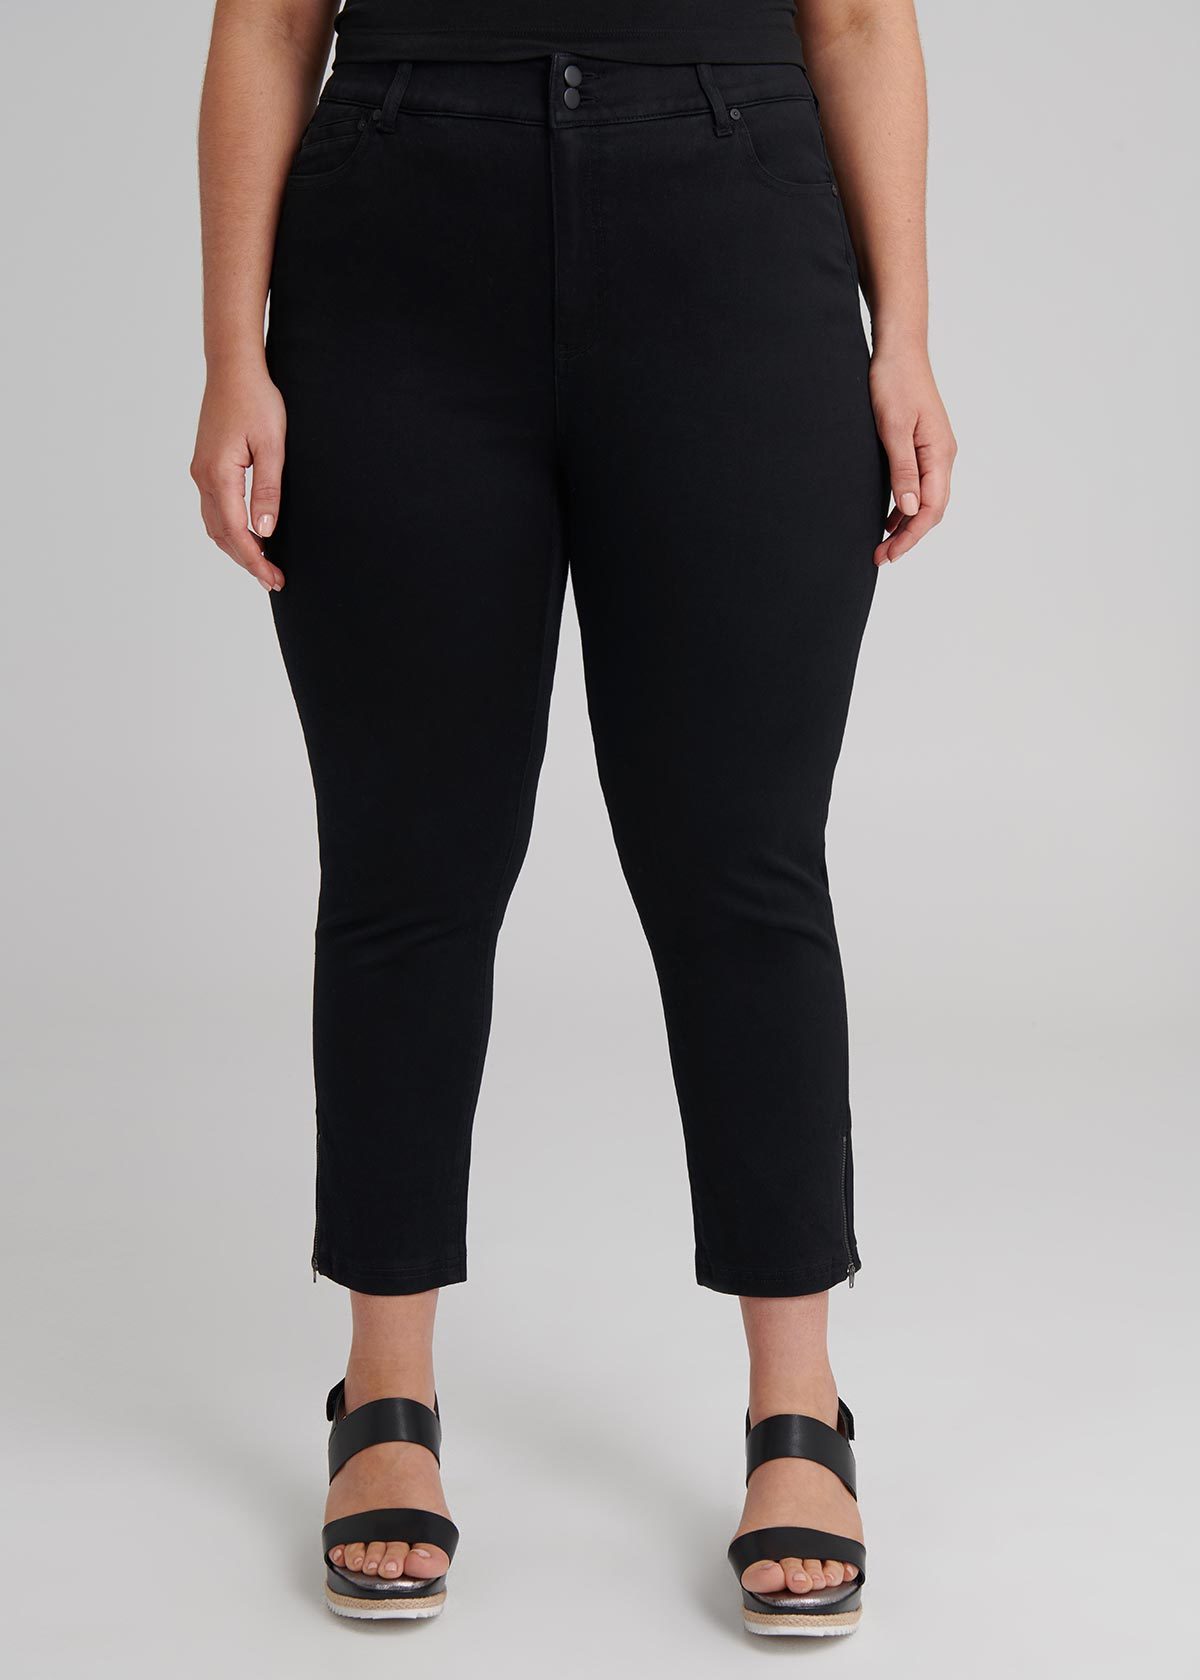 Shop The Luxe Looker Zip Jean in Black, Sizes 12-30 | Taking Shape AU